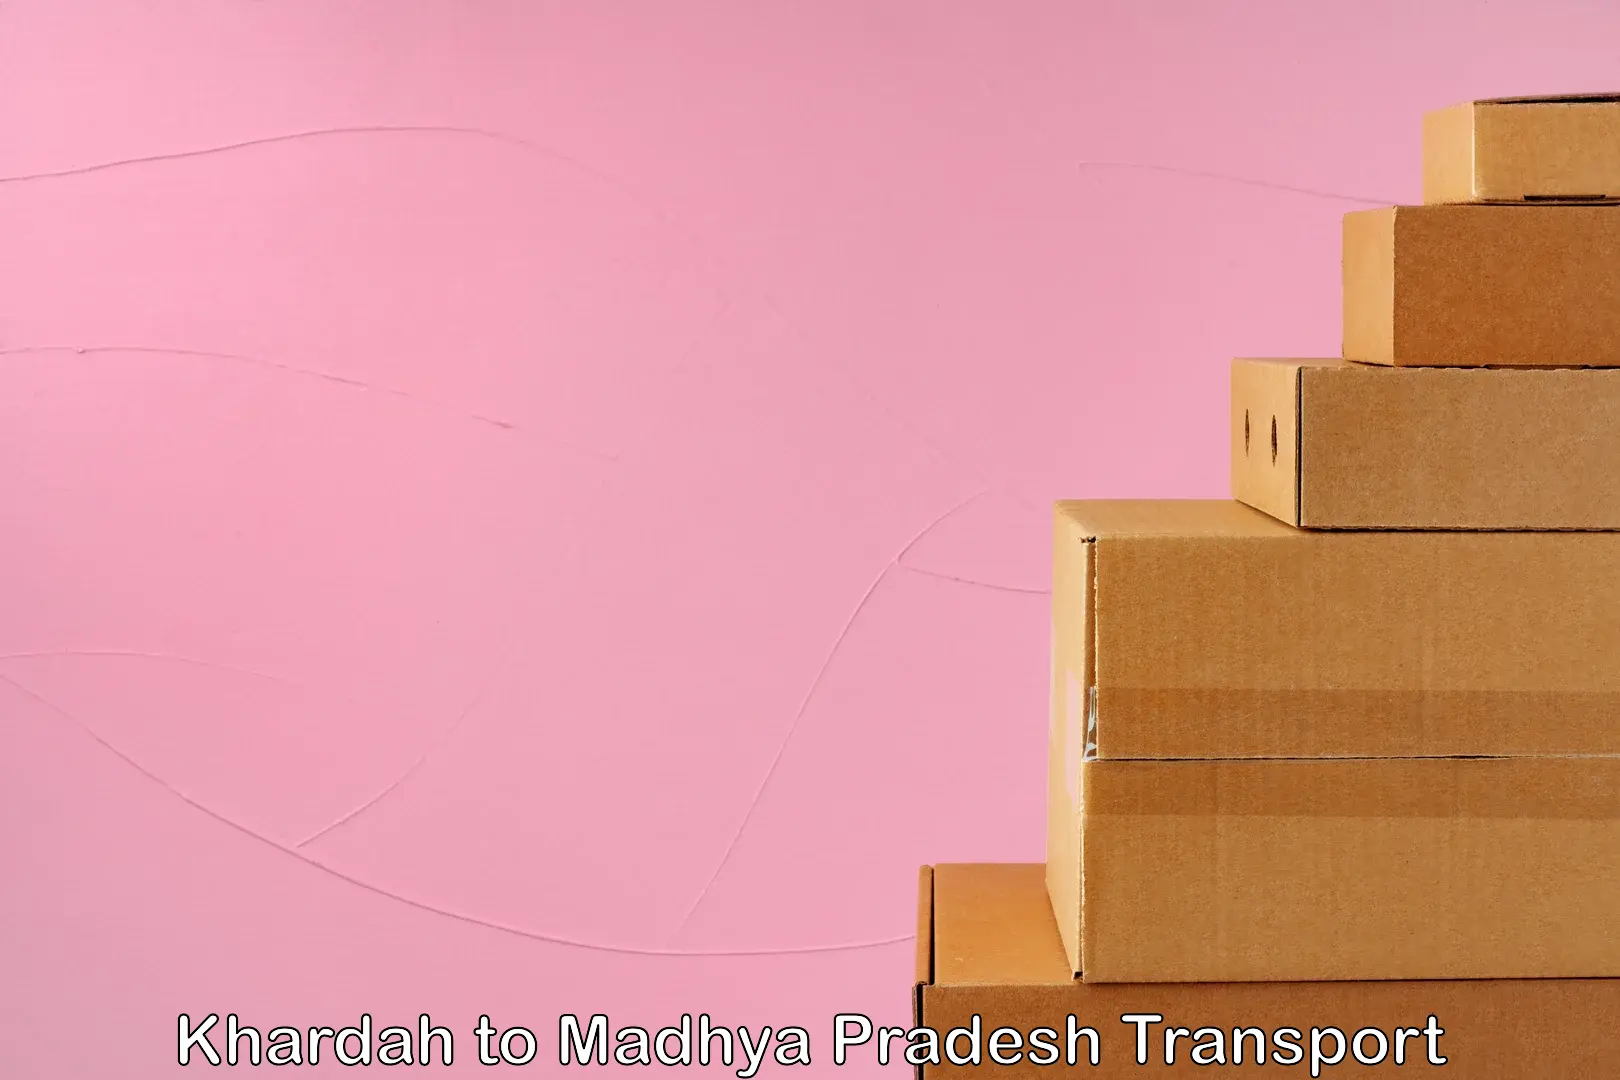 Delivery service Khardah to Madhya Pradesh